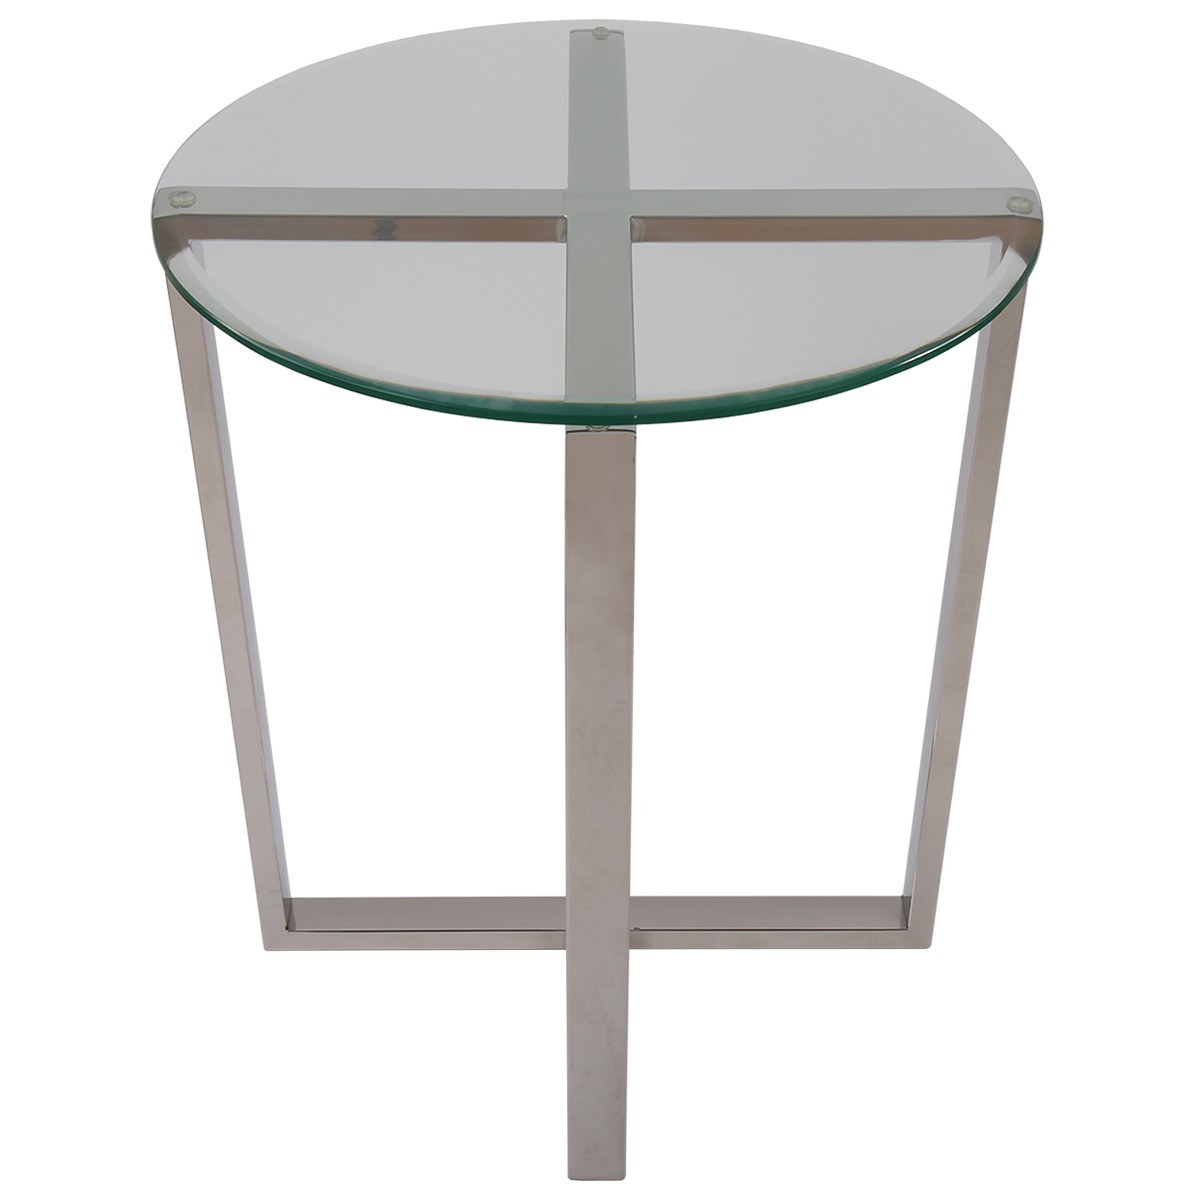 Beistelltisch rund Glas-Metall, Tisch Glas verchromt Metall, Höhe 61 cm